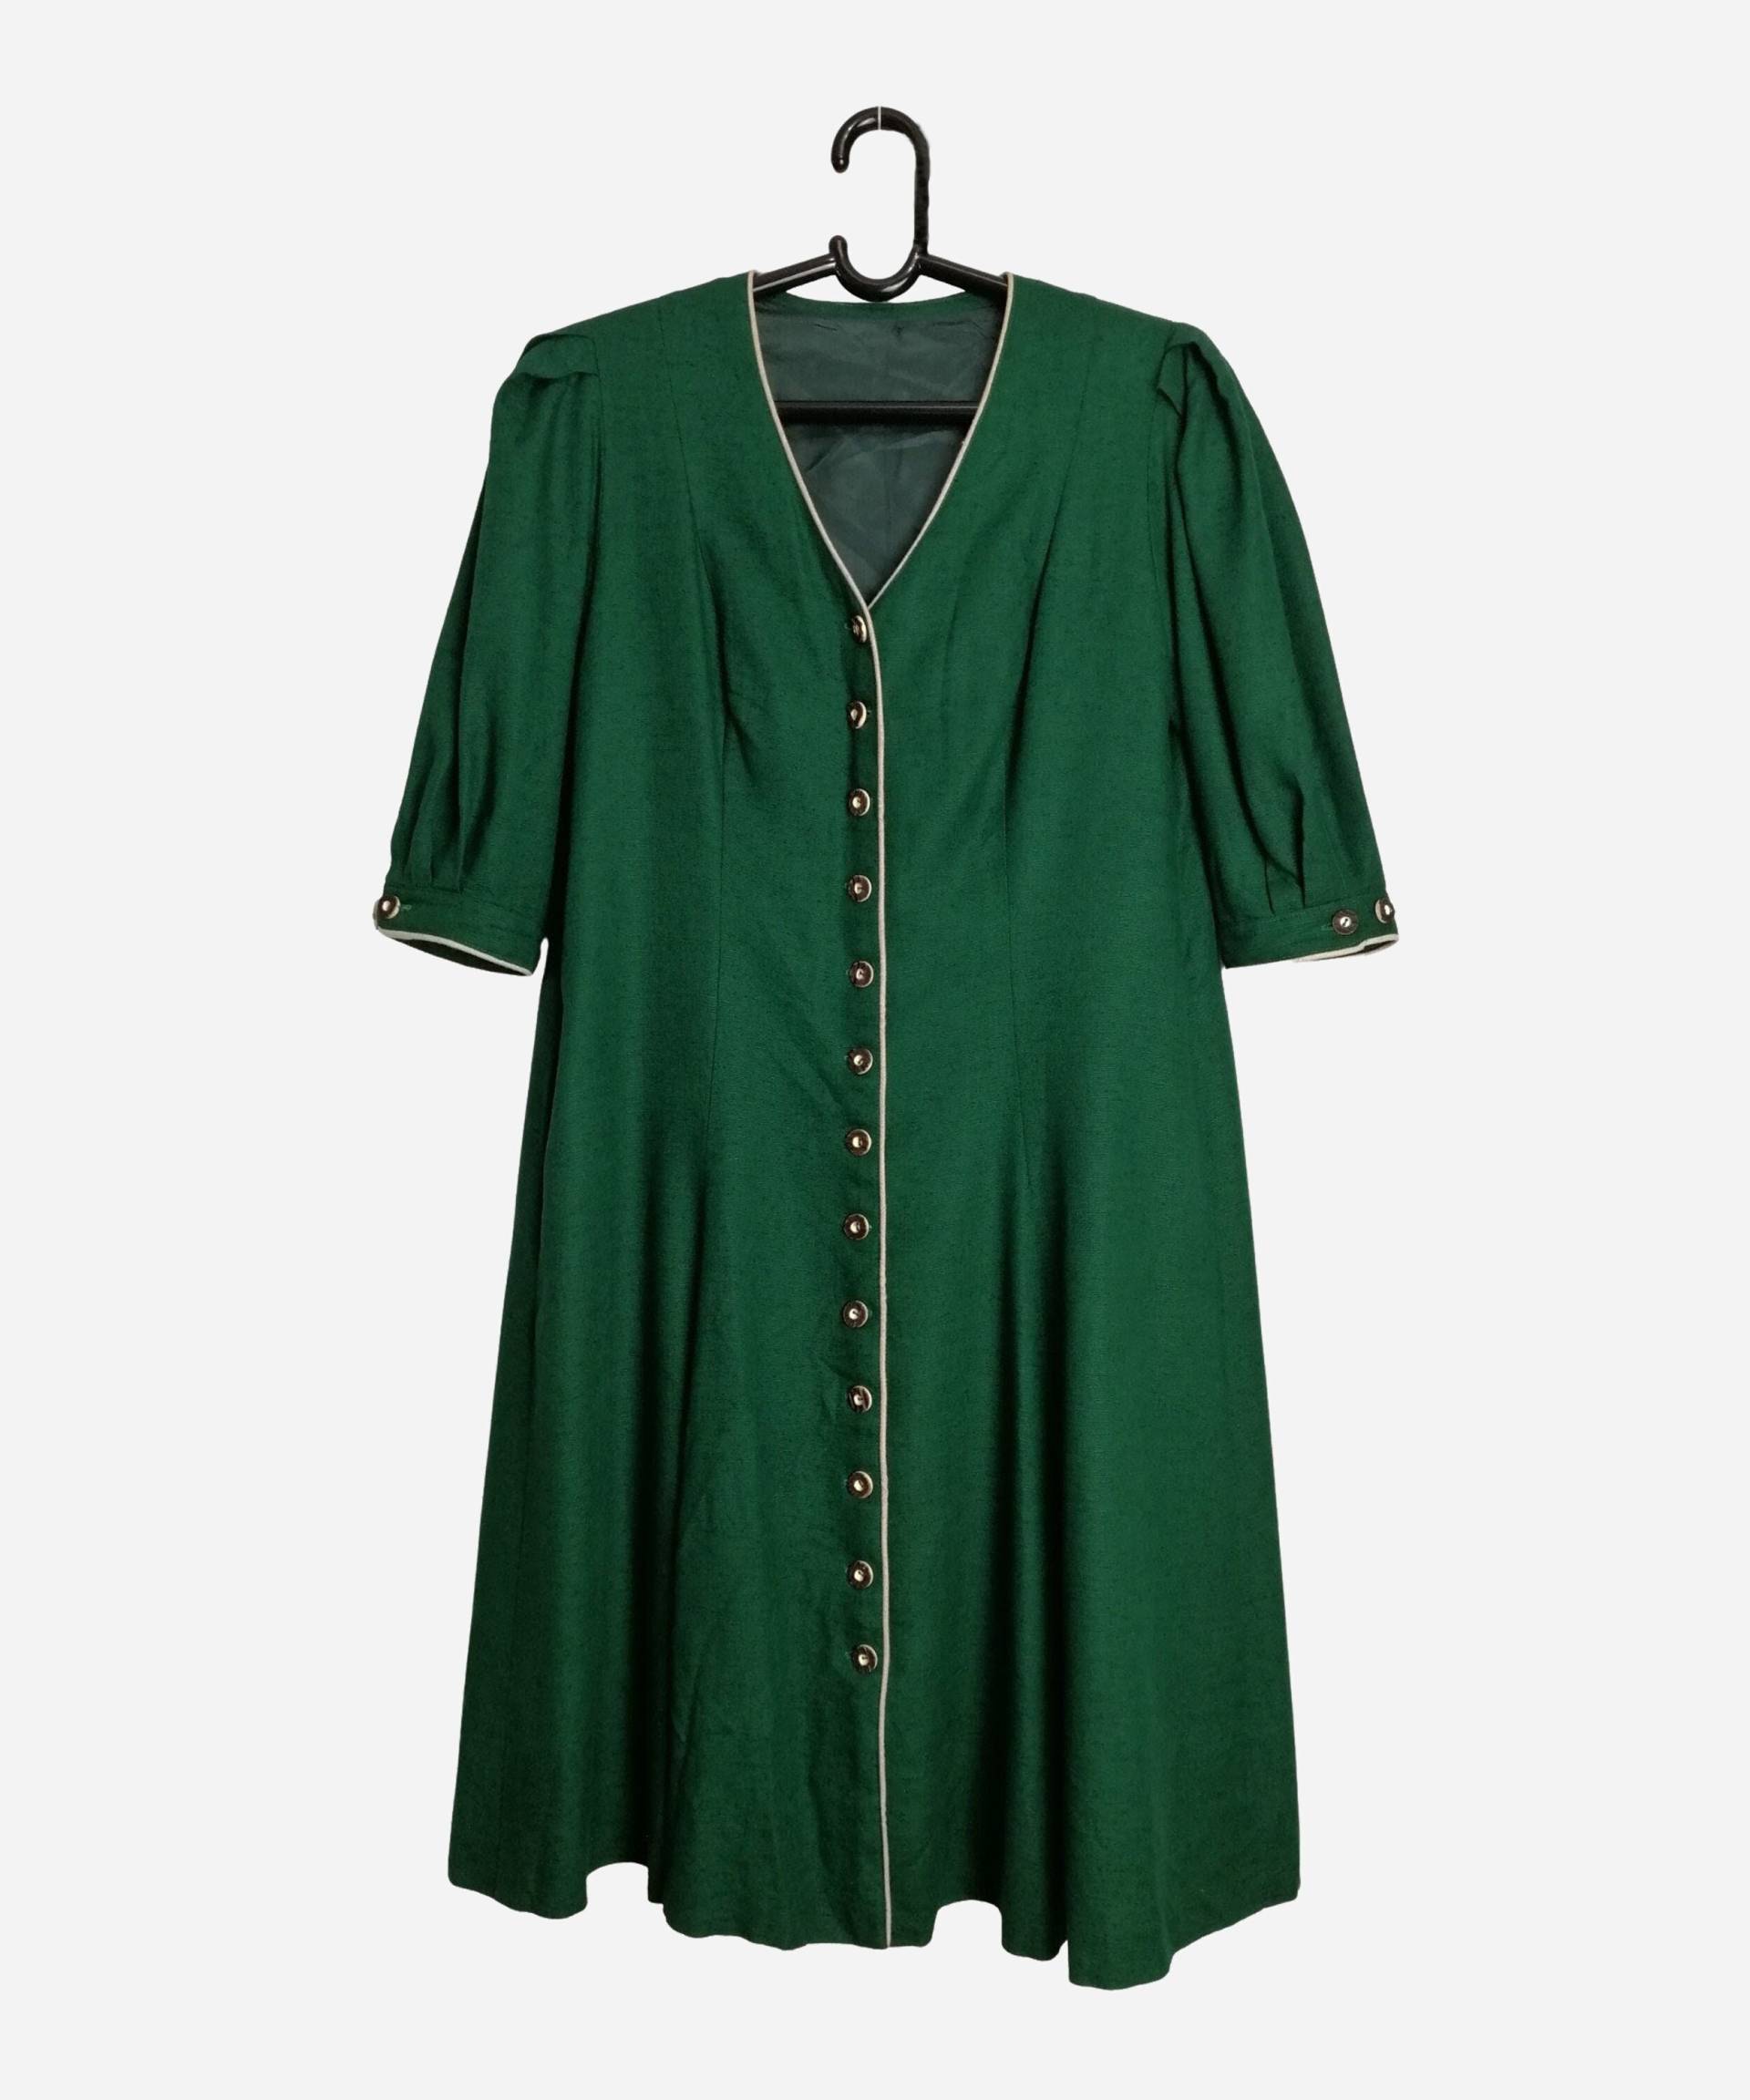 Vintage Leinen Dirndl Kleid Damen Trachten Trachtenkleid von MolinelliVintage